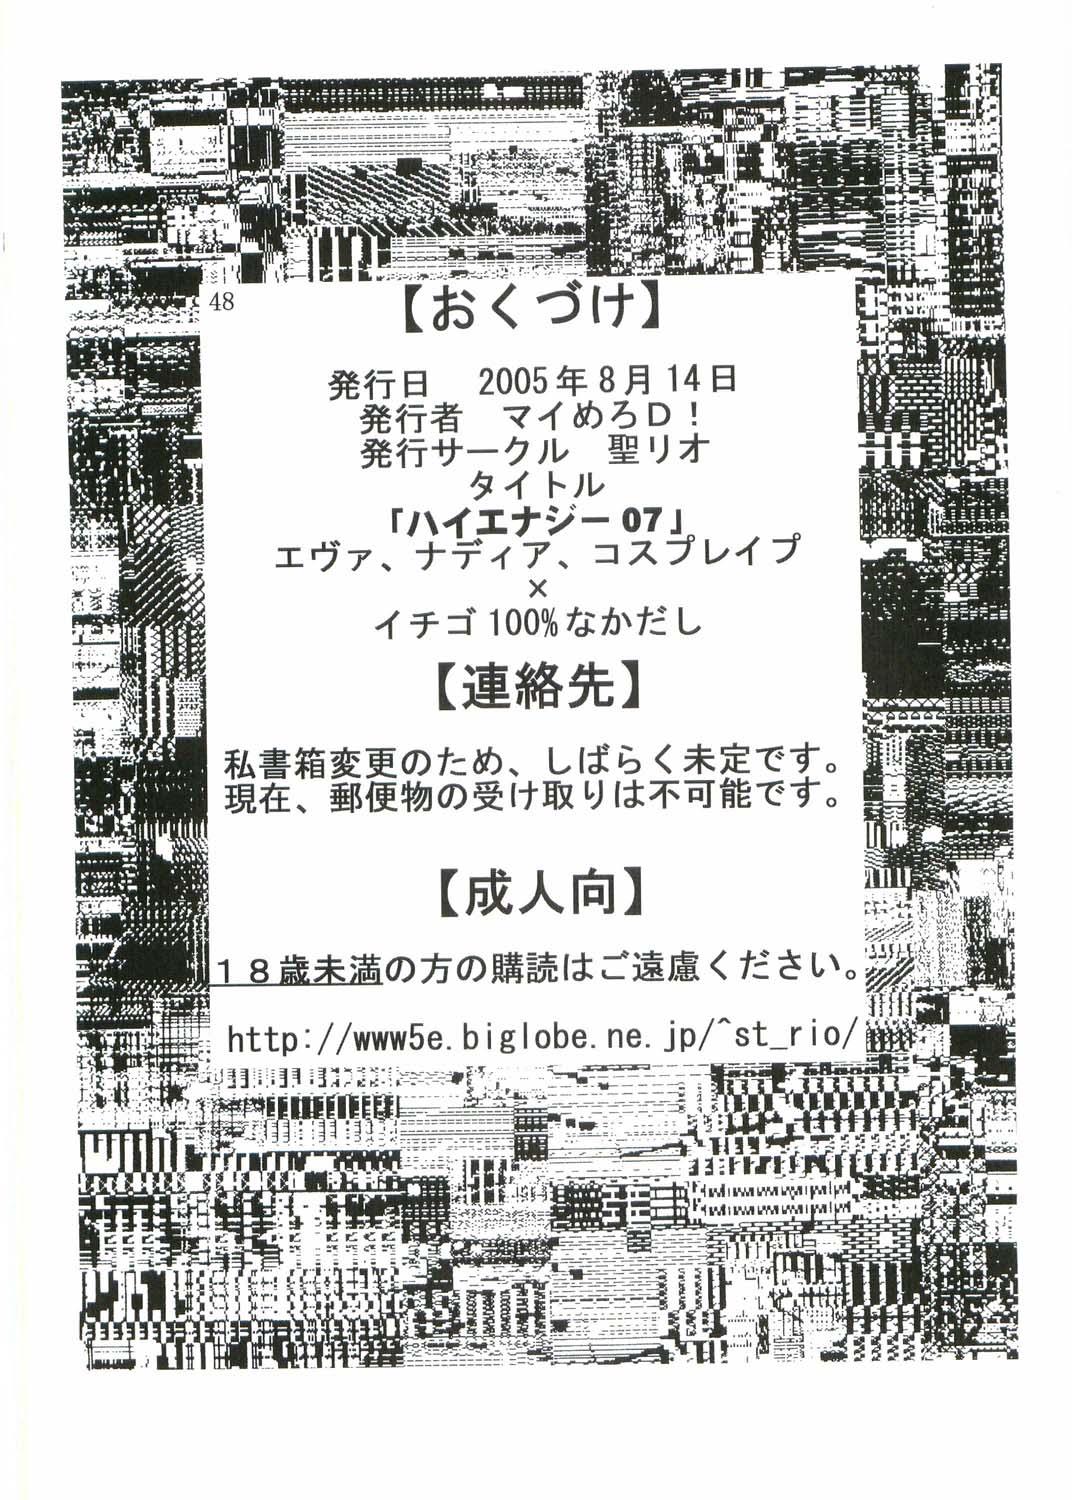 Condom Hi Energy 07 - Neon genesis evangelion Ichigo 100 Fushigi no umi no nadia Ass Lick - Page 49